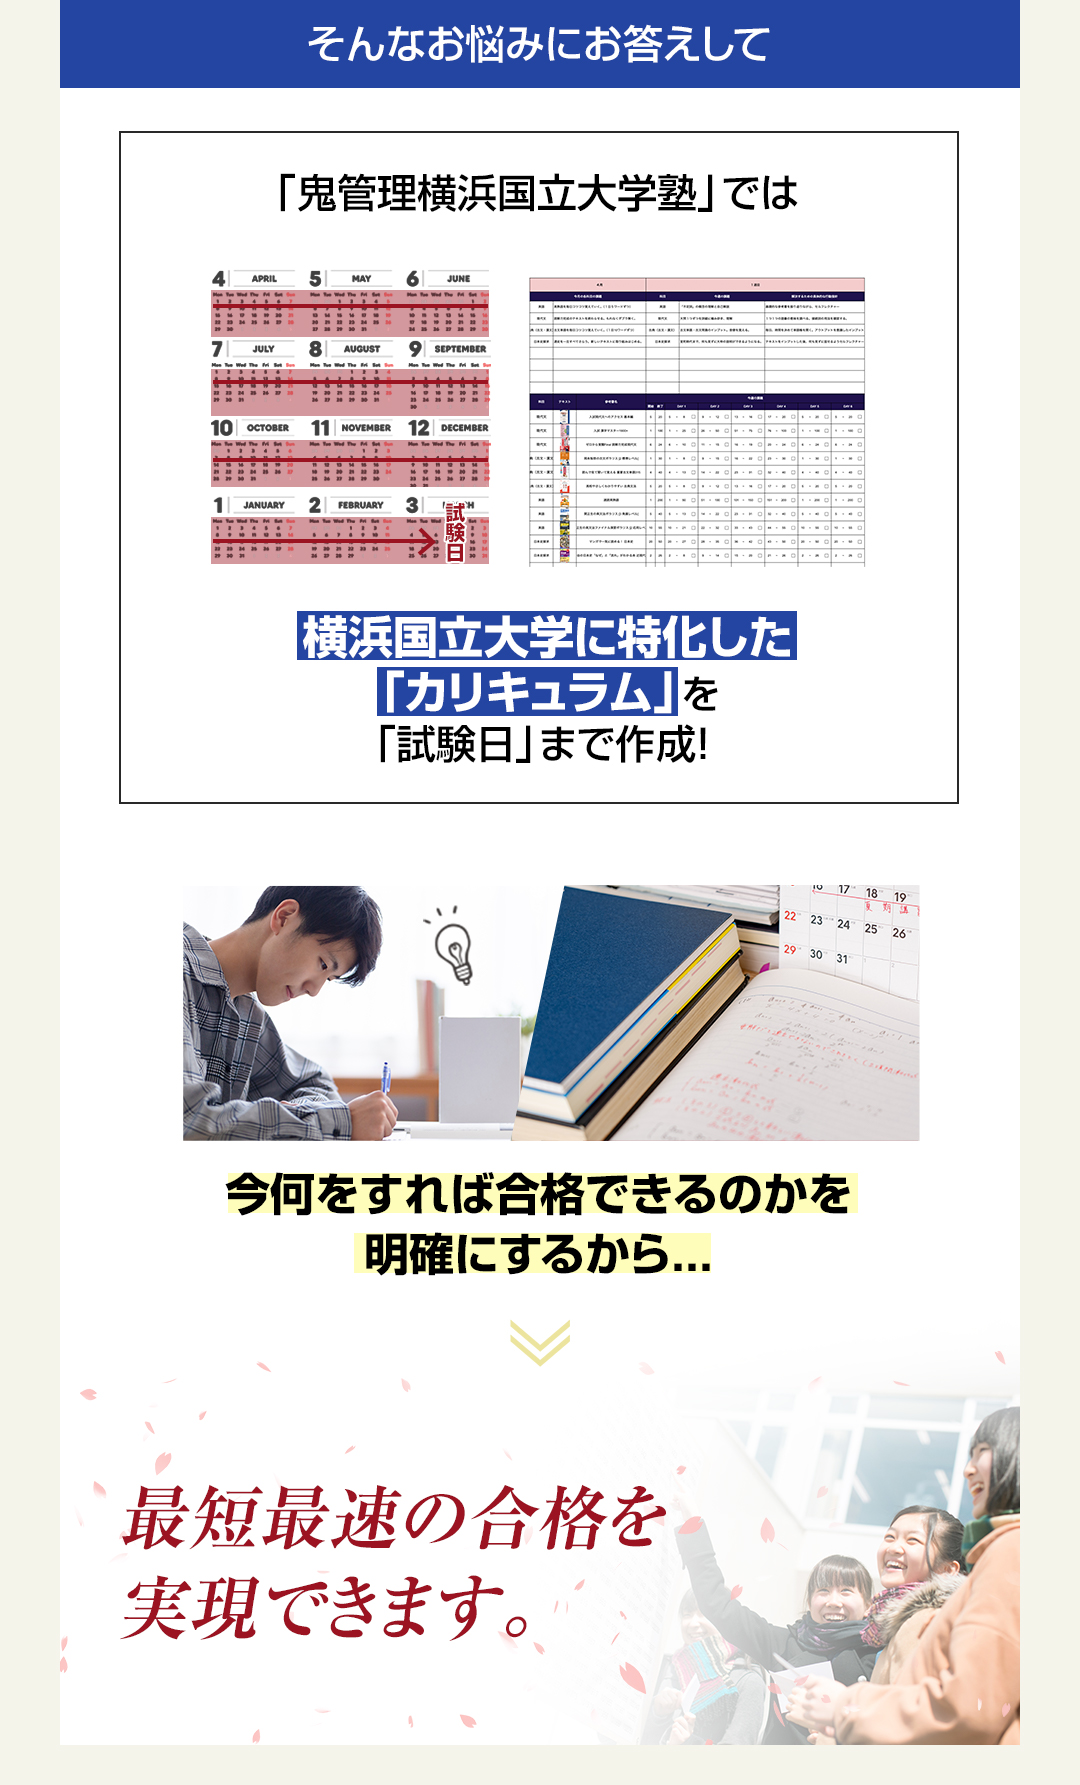 「鬼管理横浜国立大学塾」では横浜国立大学に特化した「カリキュラム」を「試験日」まで作成